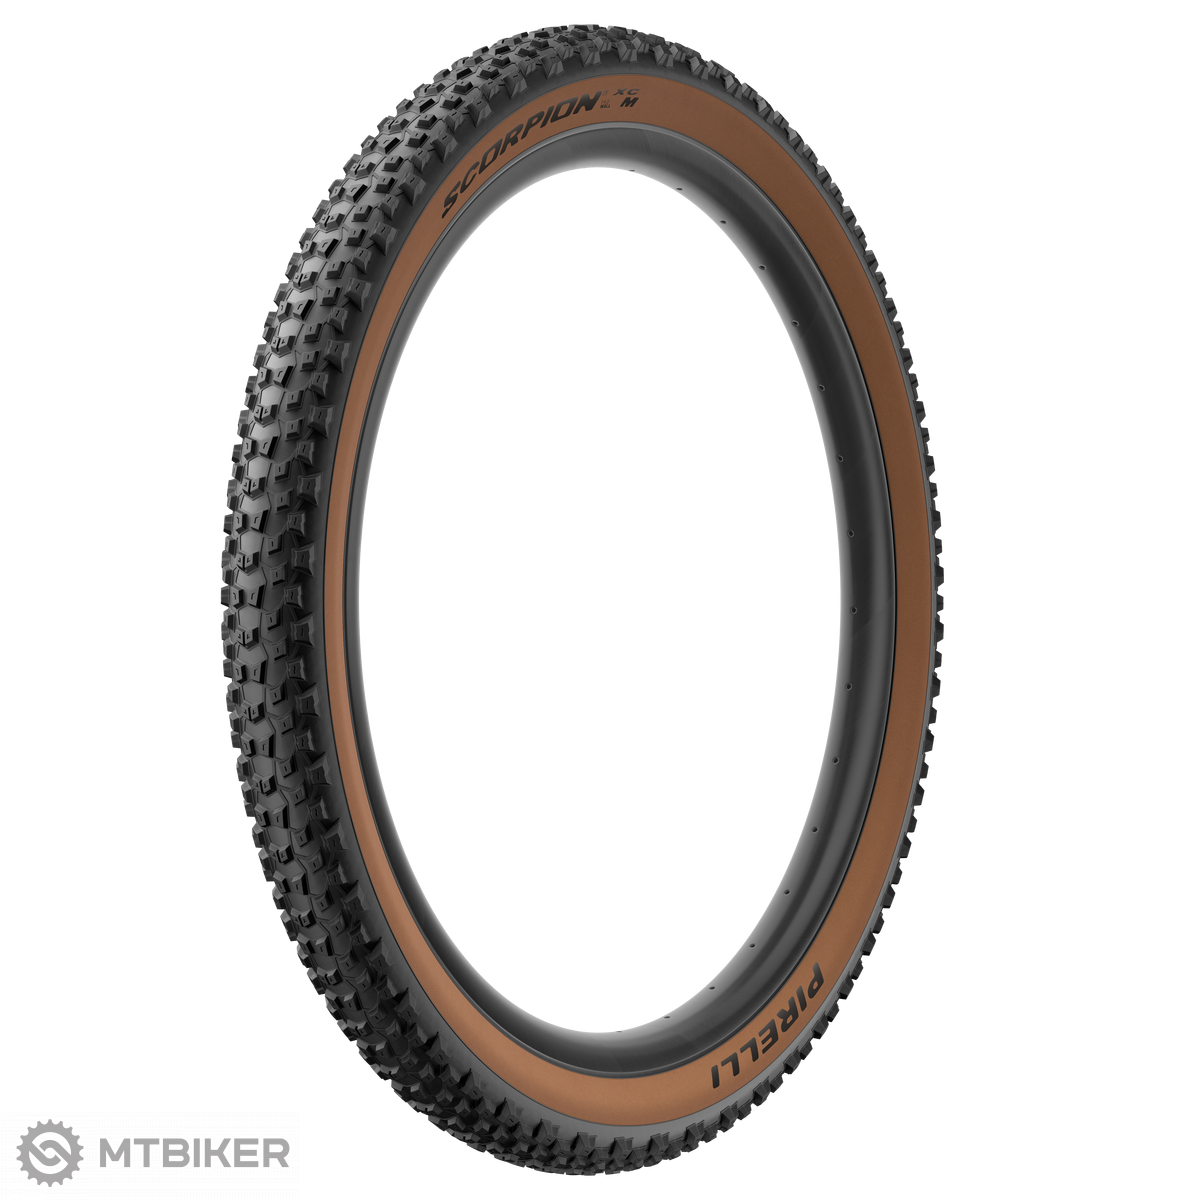 Pirelli Scorpion™ XC M 29x2.20 ProWALL SmartGRIP tire, TR, kevlar, classic  